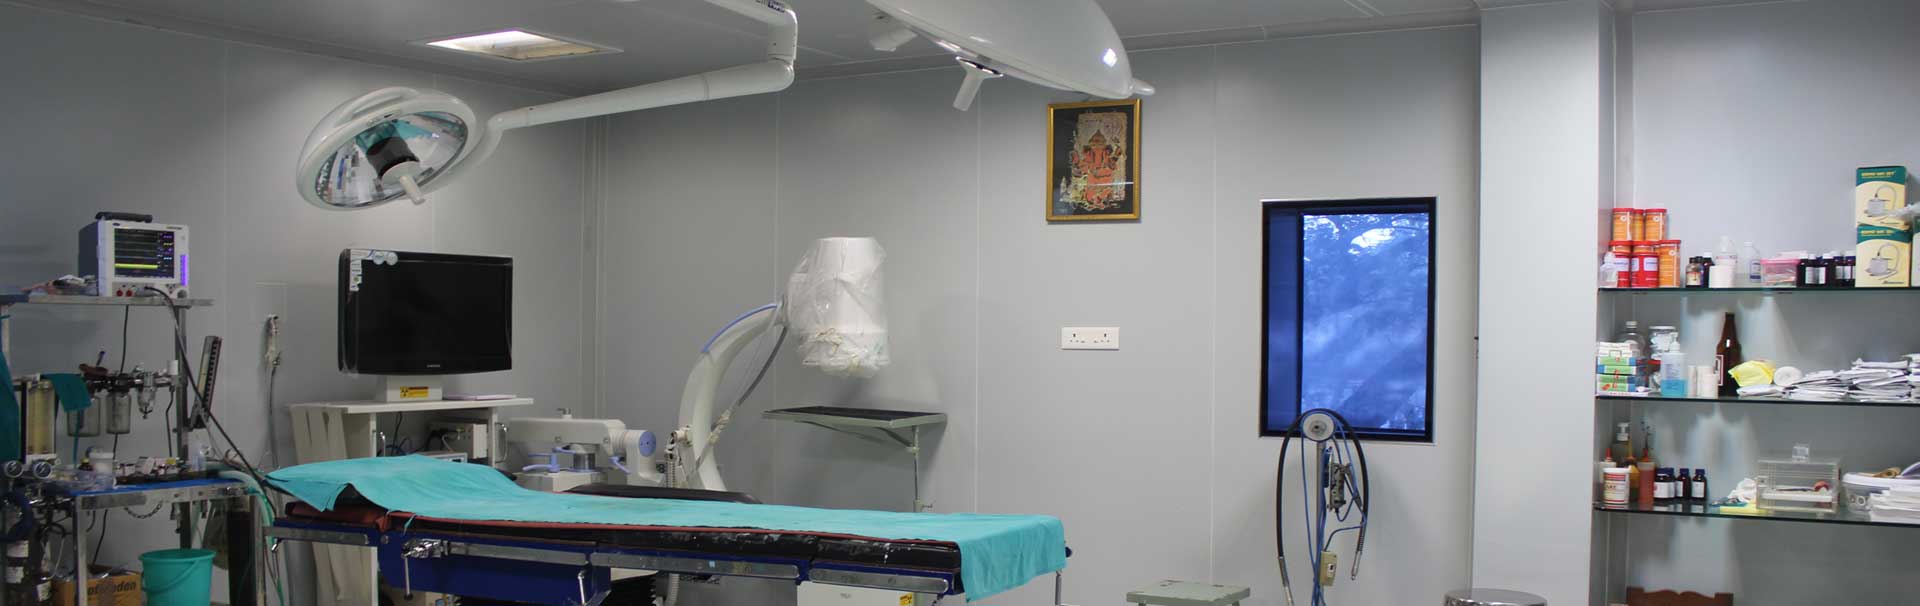 Sushrut hospital in satara